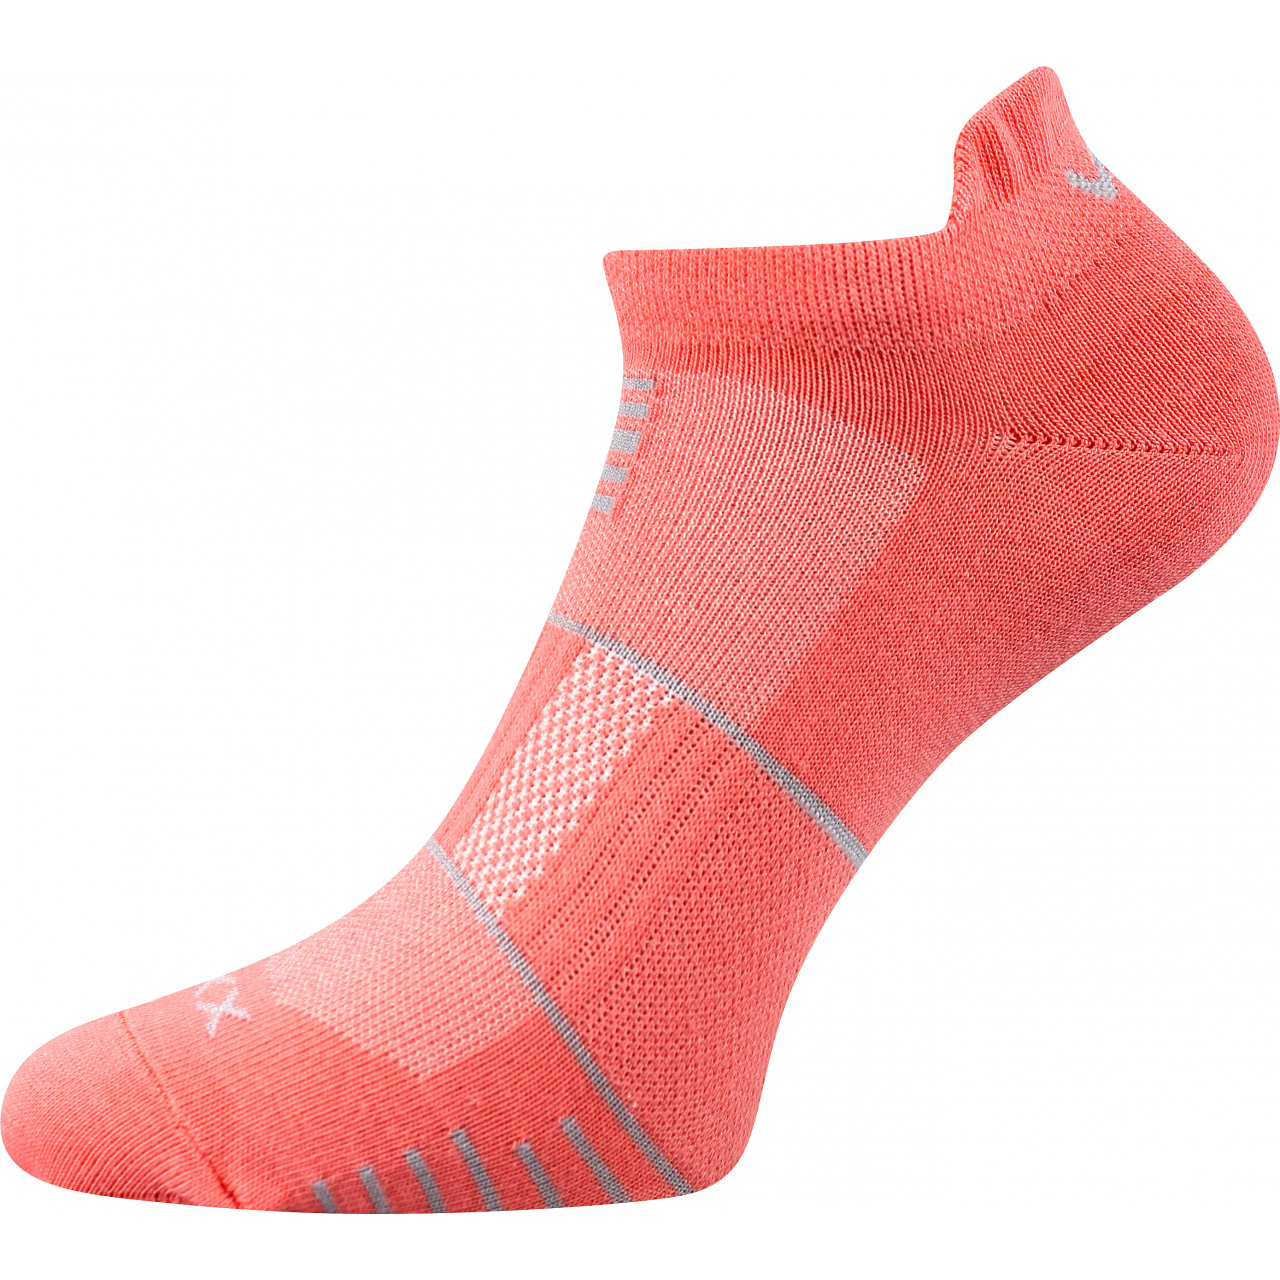 Ponožky sportovní unisex Voxx Avenar - oranžové, 39-42